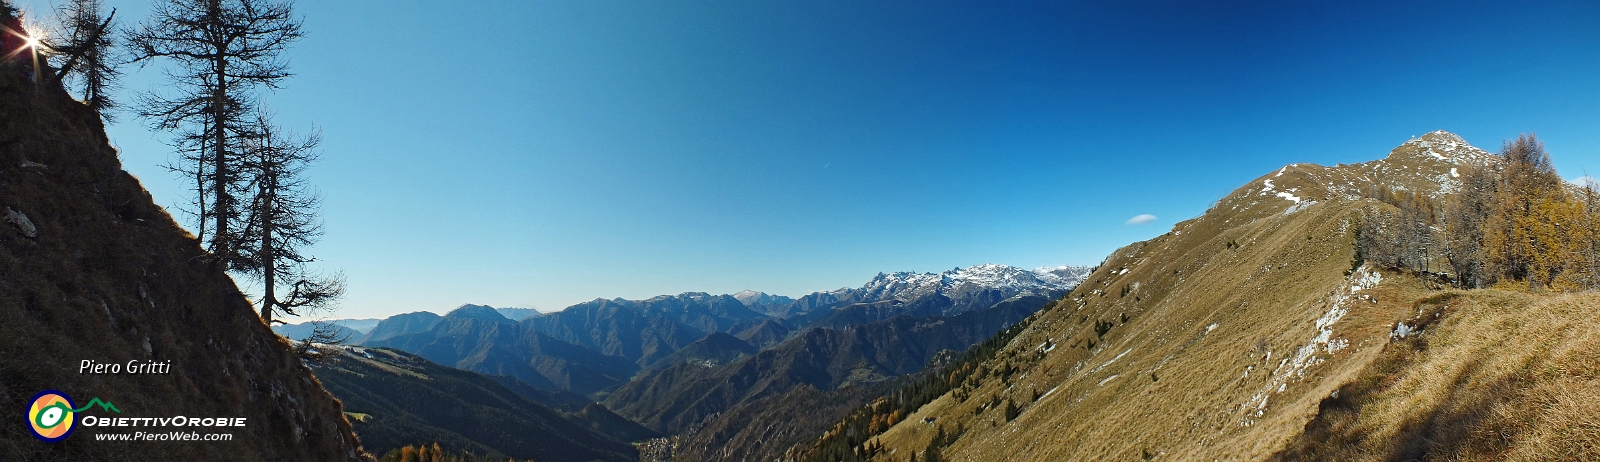 31 panoramica dal Passo di Monte Colle - 2... .jpg